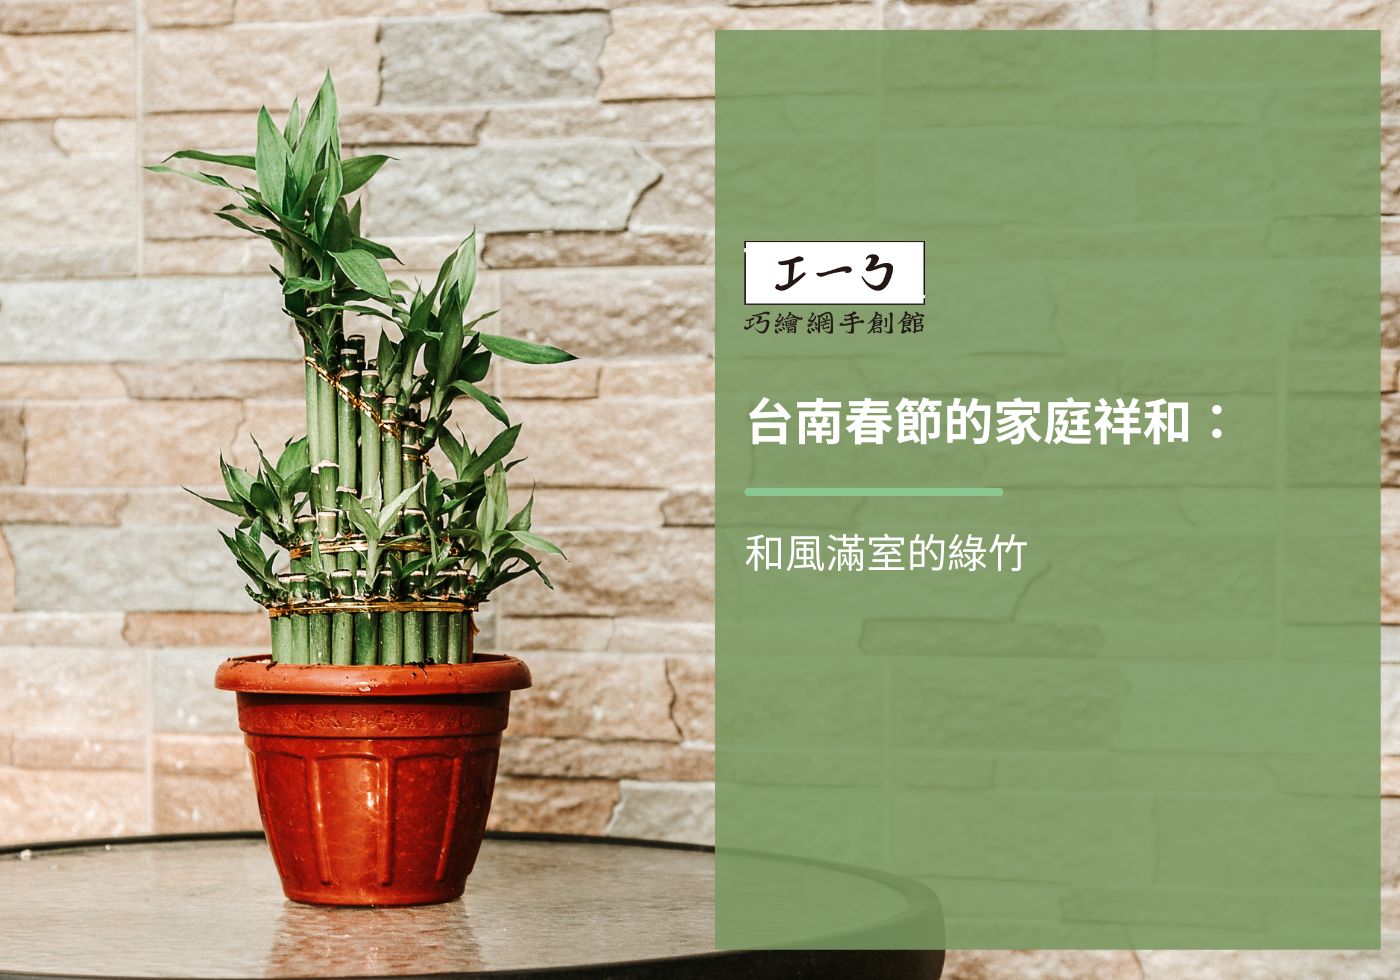 您目前正在查看 台南春節的家庭祥和：和風滿室的綠竹